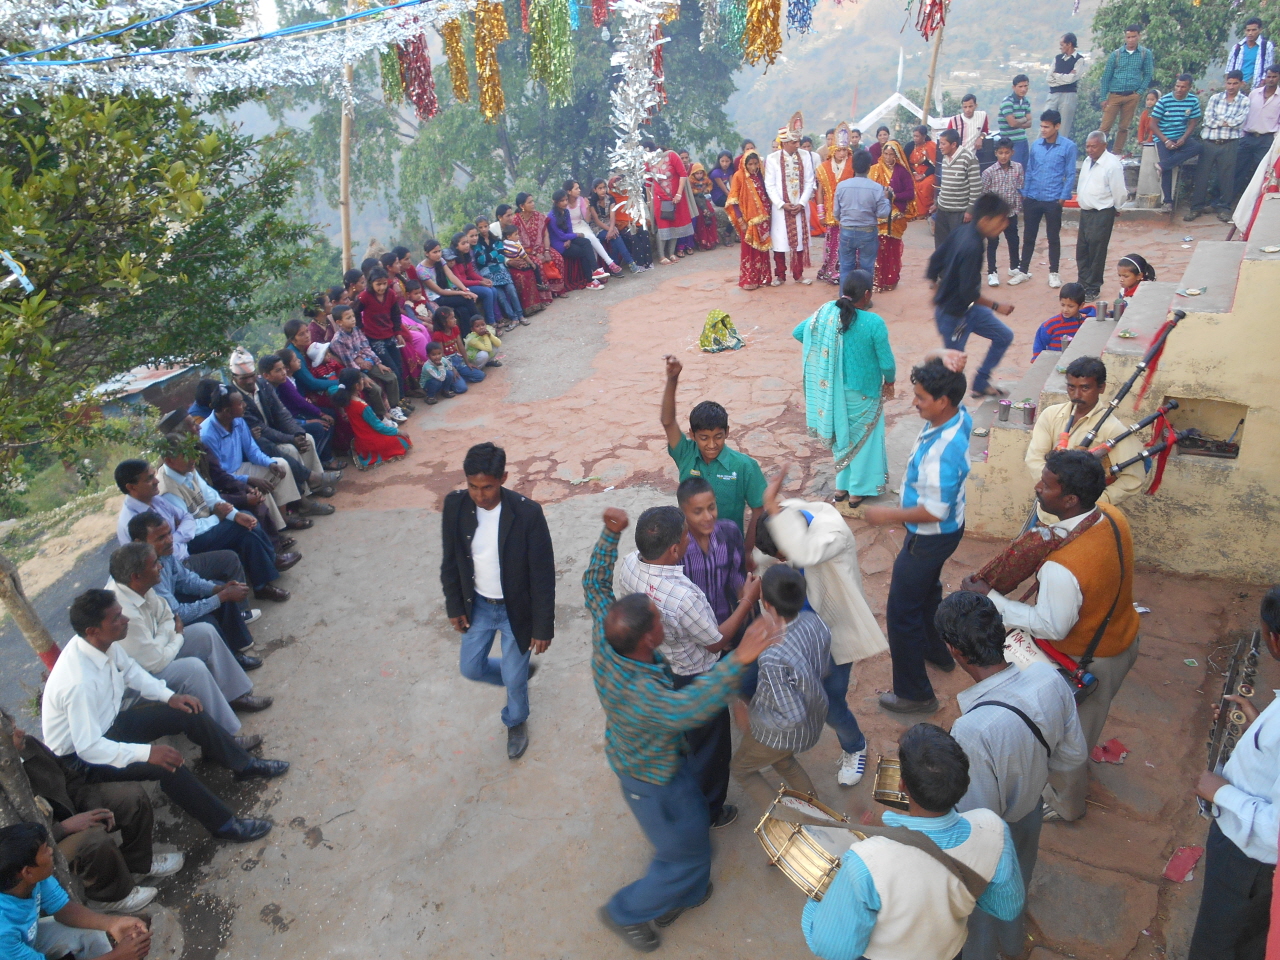 예식을 올리는 한 옆에서 마을 청년들이 신명나는 춤판을 벌이고 있다.